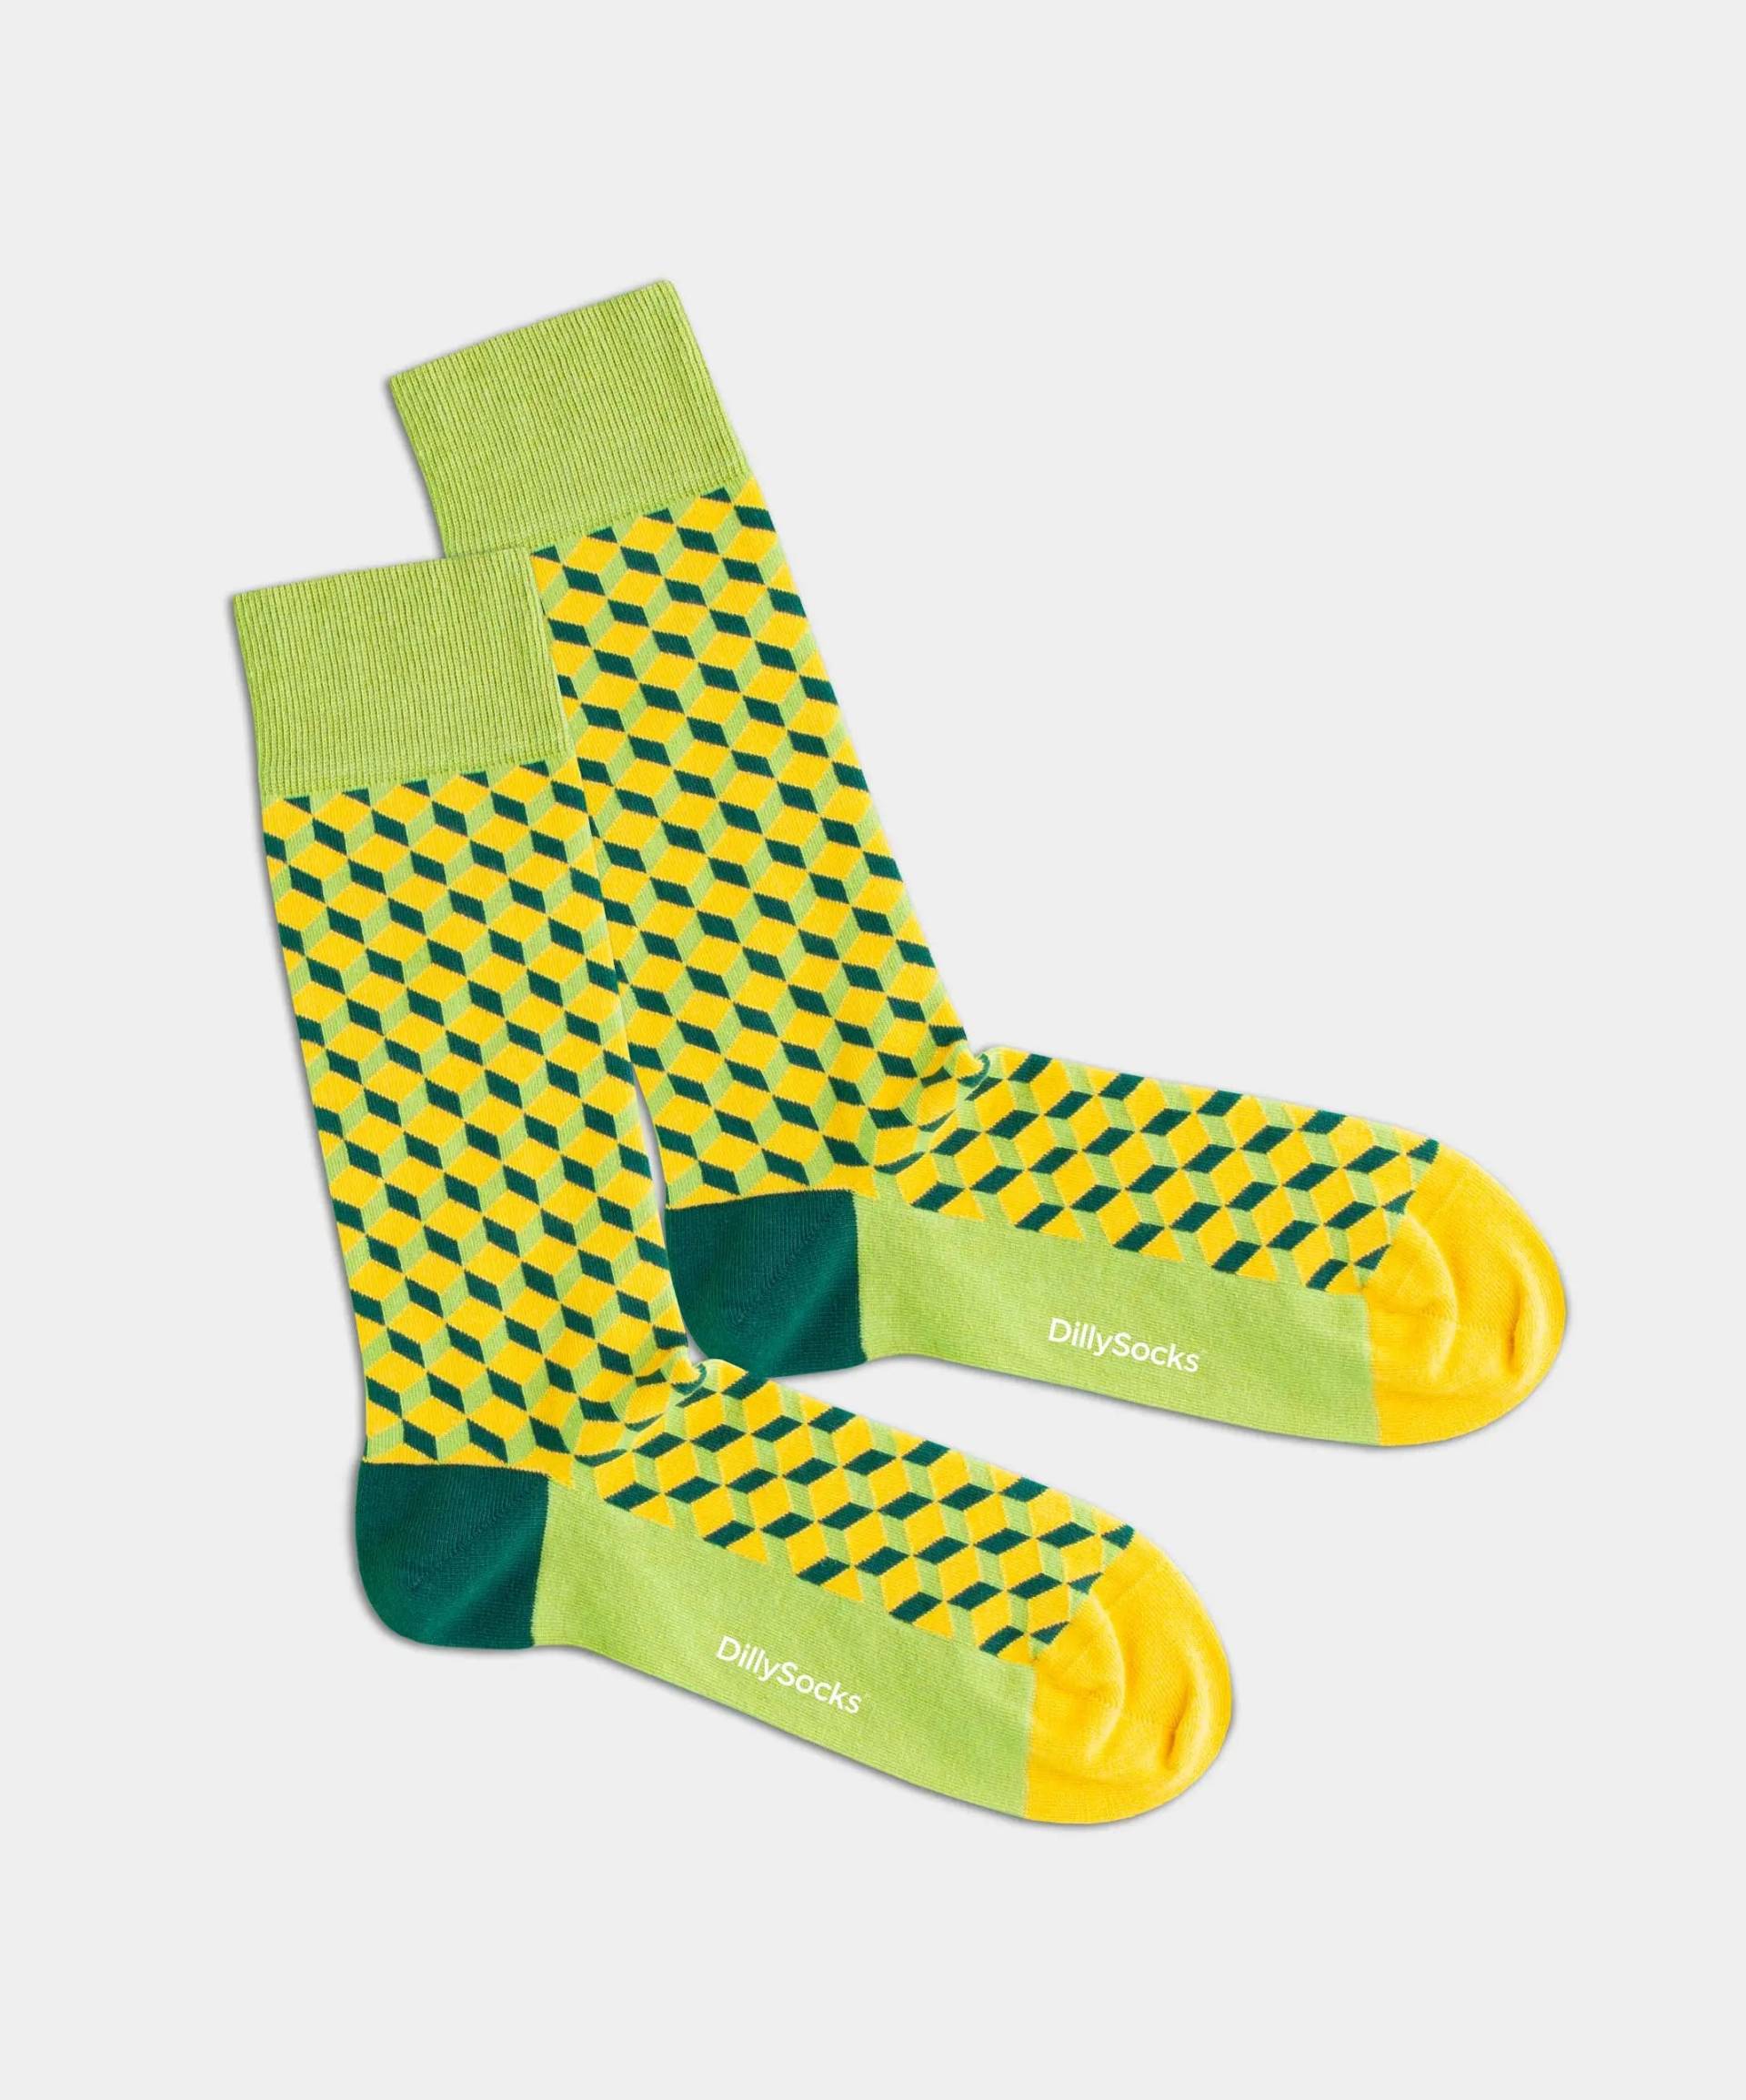 - Socken in Gelb Grün mit Dice Geometrisch Motiv/Muster von DillySocks